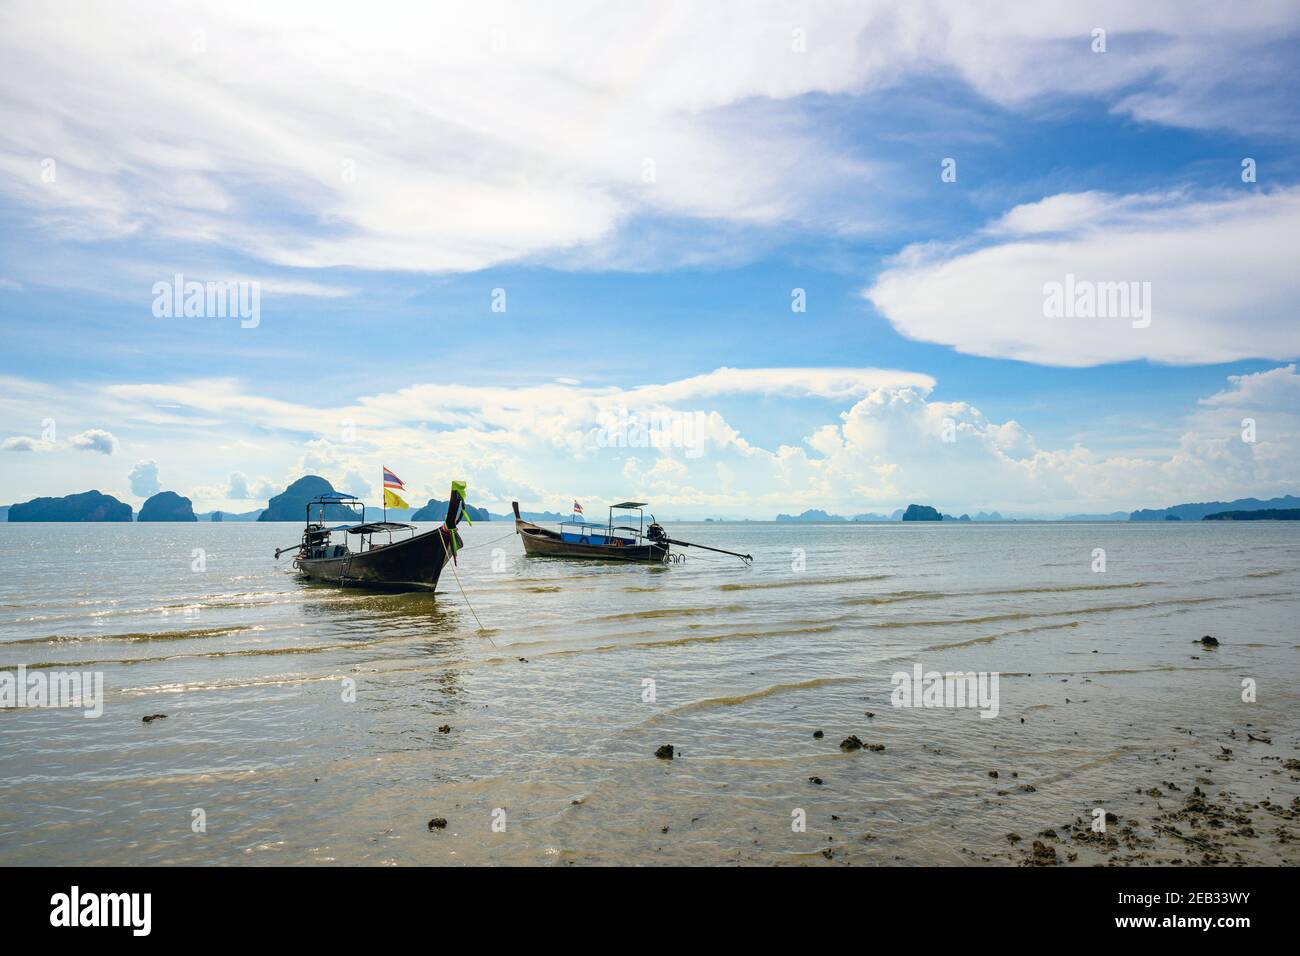 Deux bateaux touristiques amarrés dans l'eau à la plage de tup Kaek, province de Krabi, Thaïlande pendant la journée avec un beau ciel. Banque D'Images